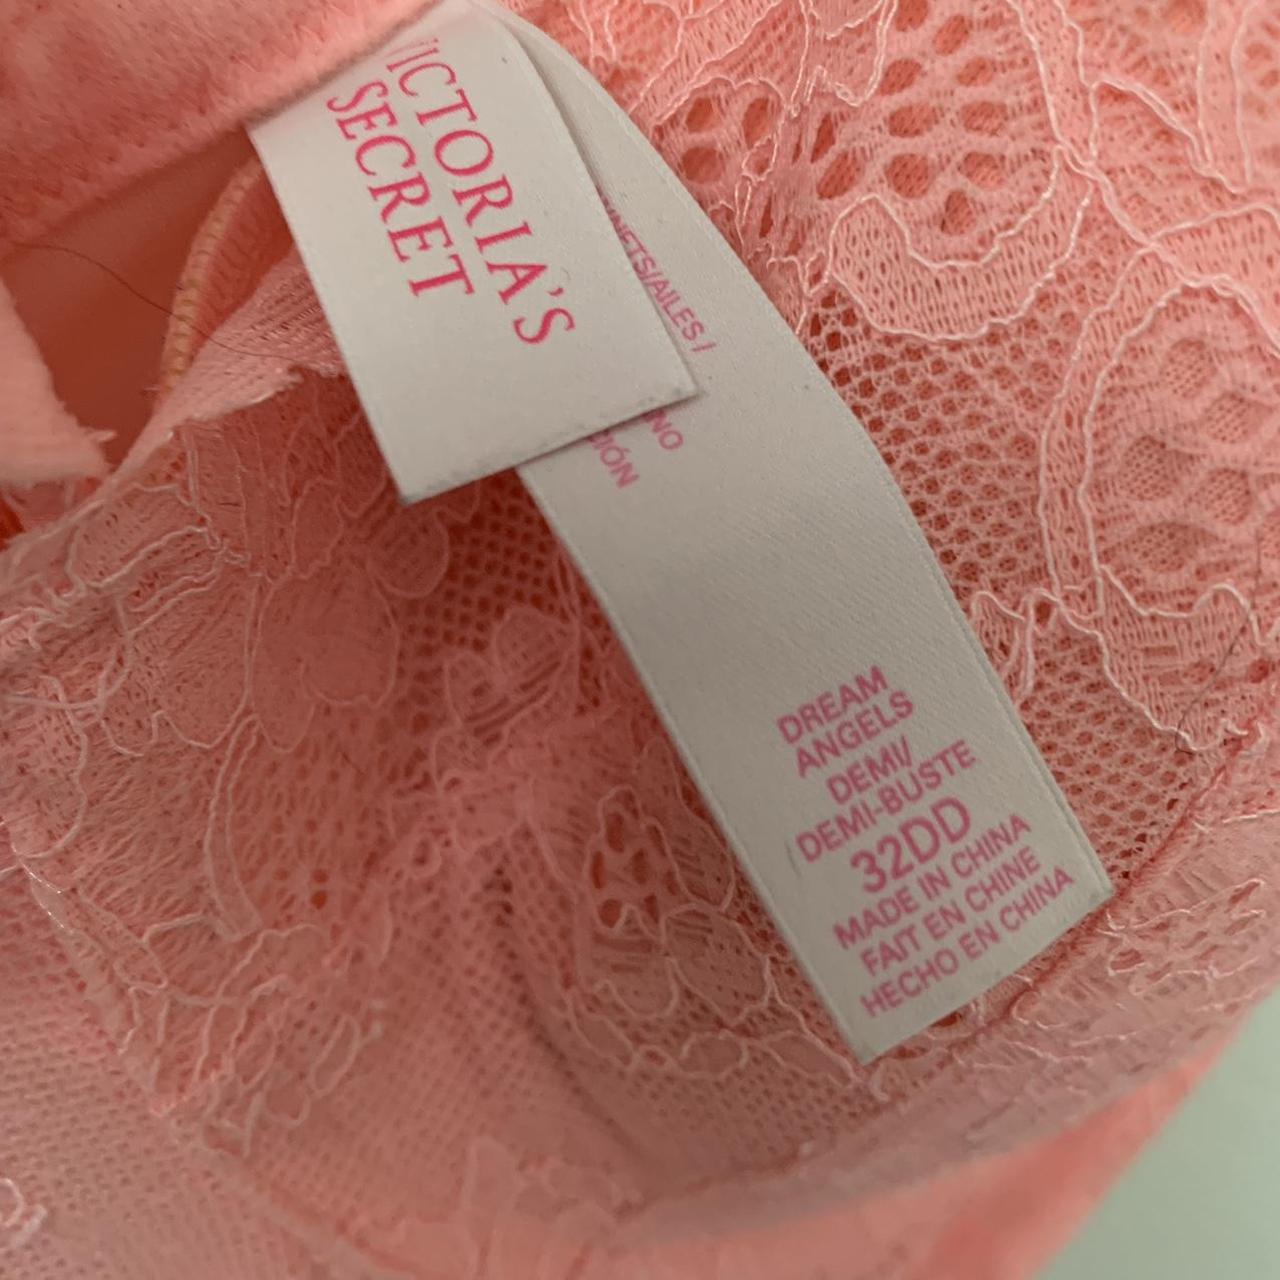 Victorias Secret dream angels lace demi bra pink size 32DD